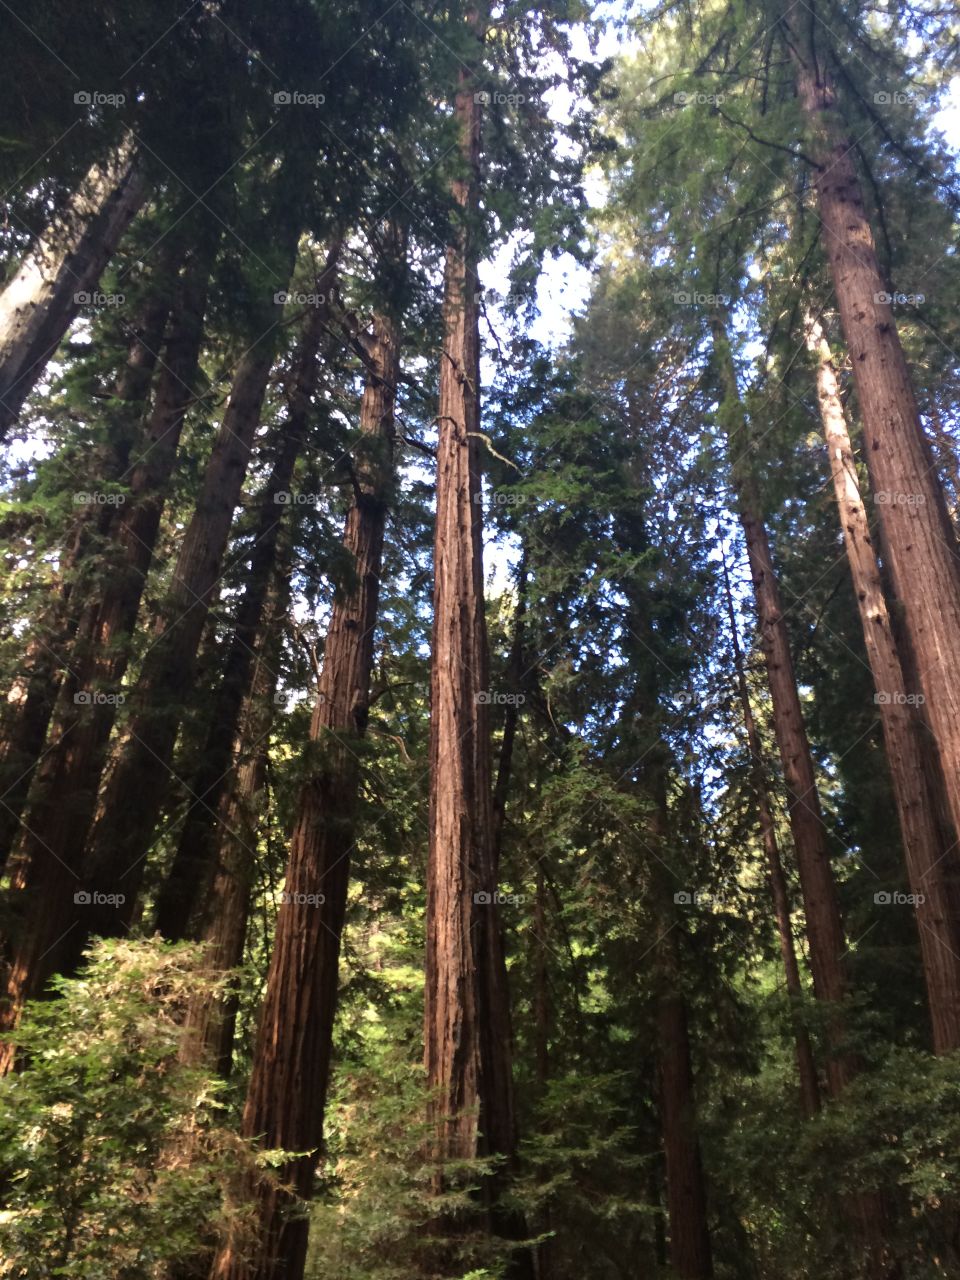 Sequoia forest in California 